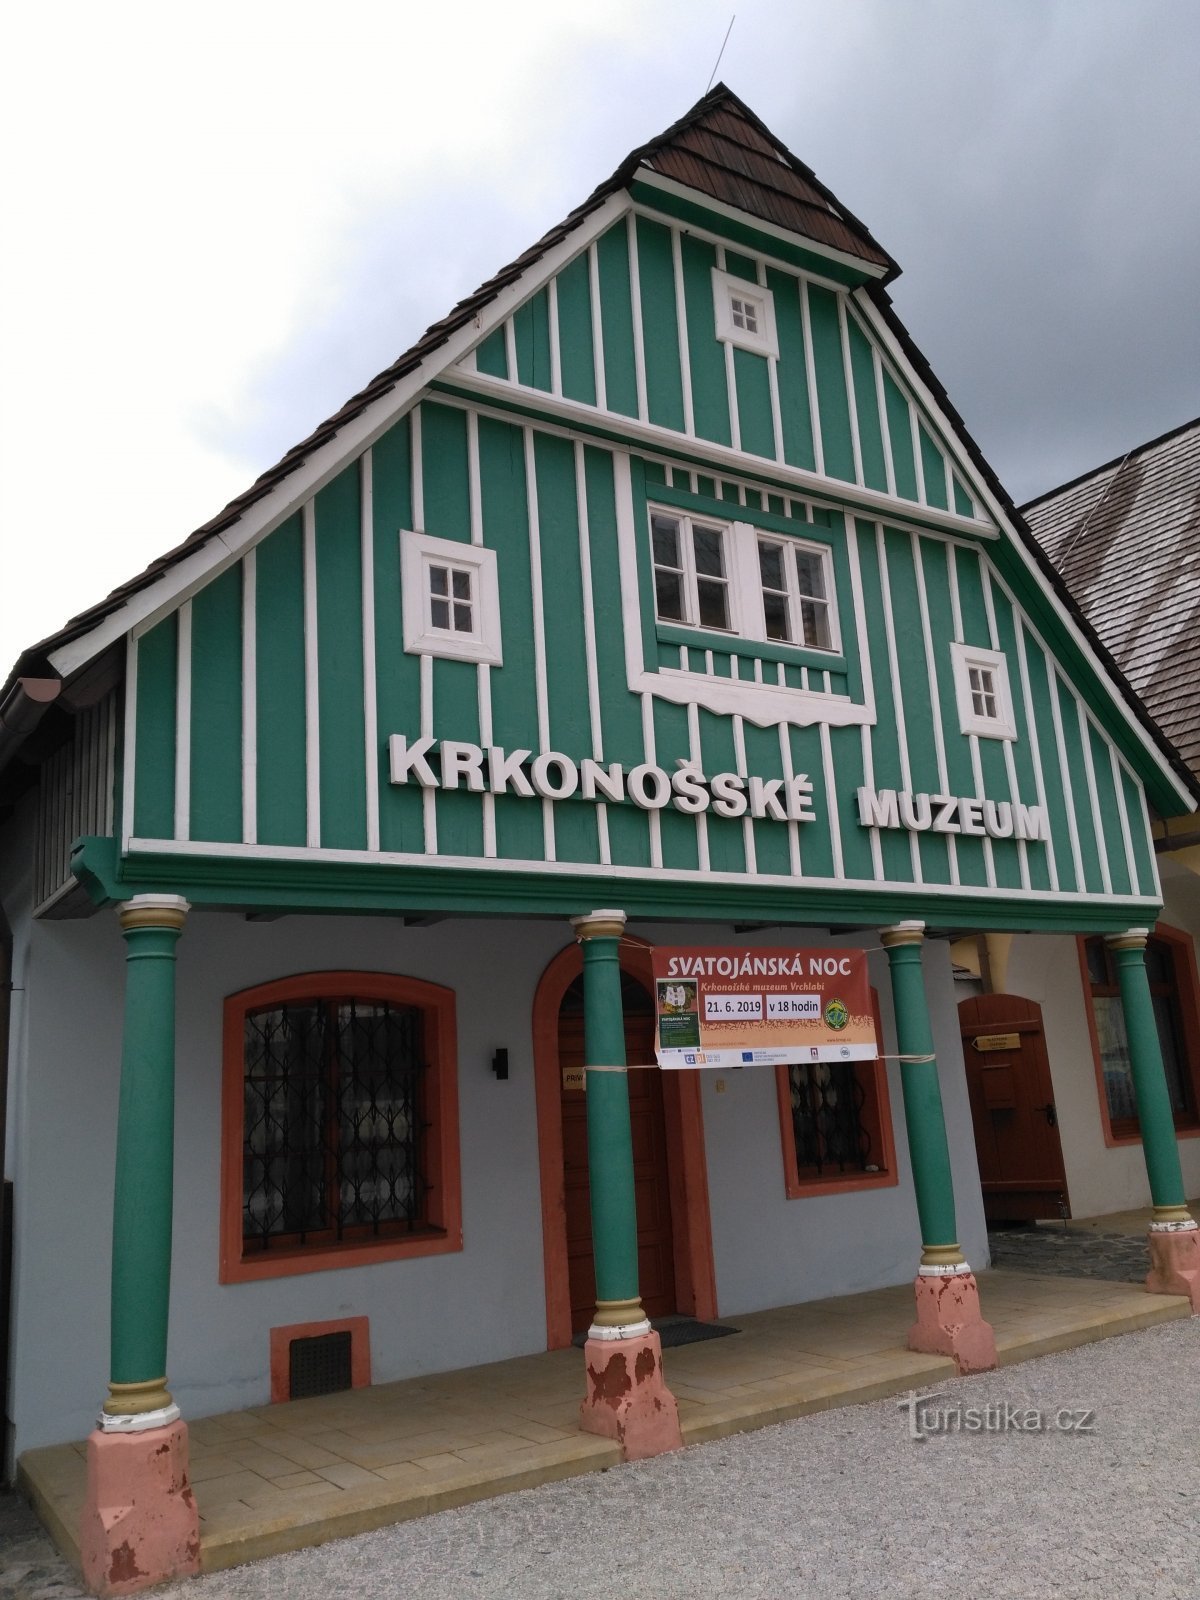 Μουσείο Krkonoše Vrchlabí